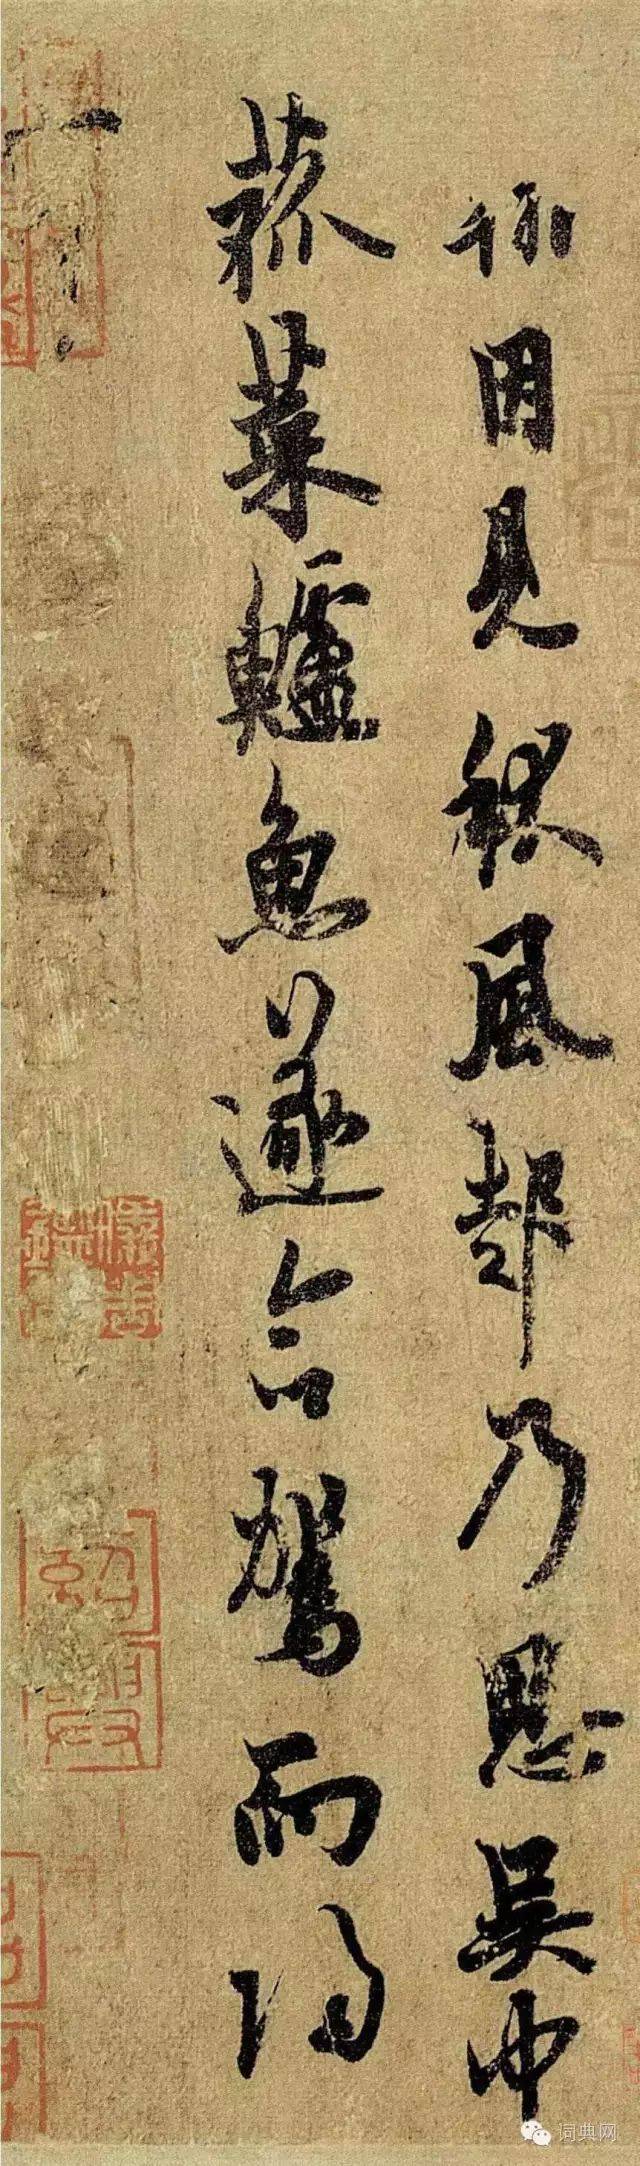 对开有瘦金书题跋一则,是宋徽宗赵佶在赏鉴之余写下的心得.